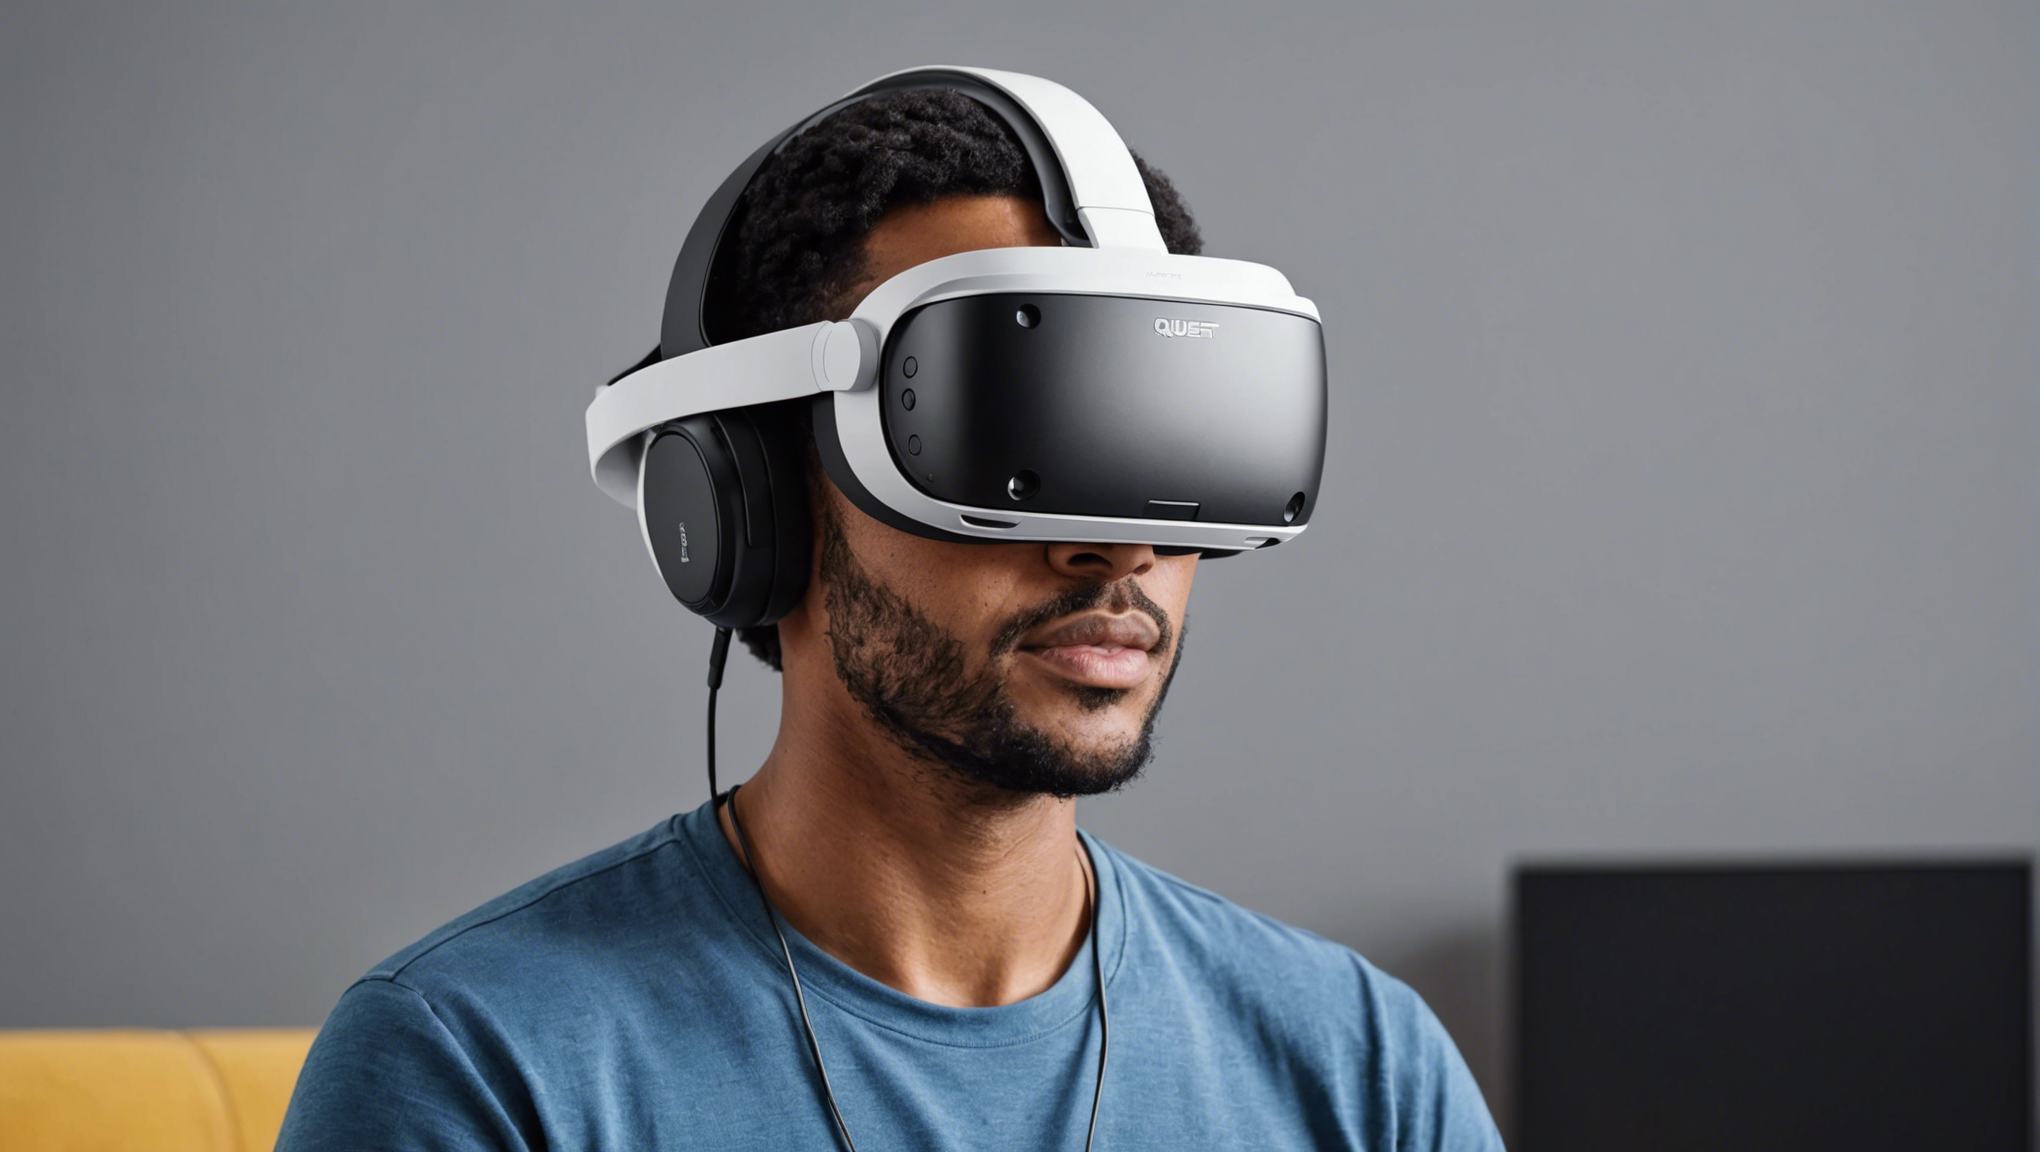 découvrez les fonctionnalités principales du casque de réalité virtuelle meta quest 2 et plongez dans des expériences immersives uniques.